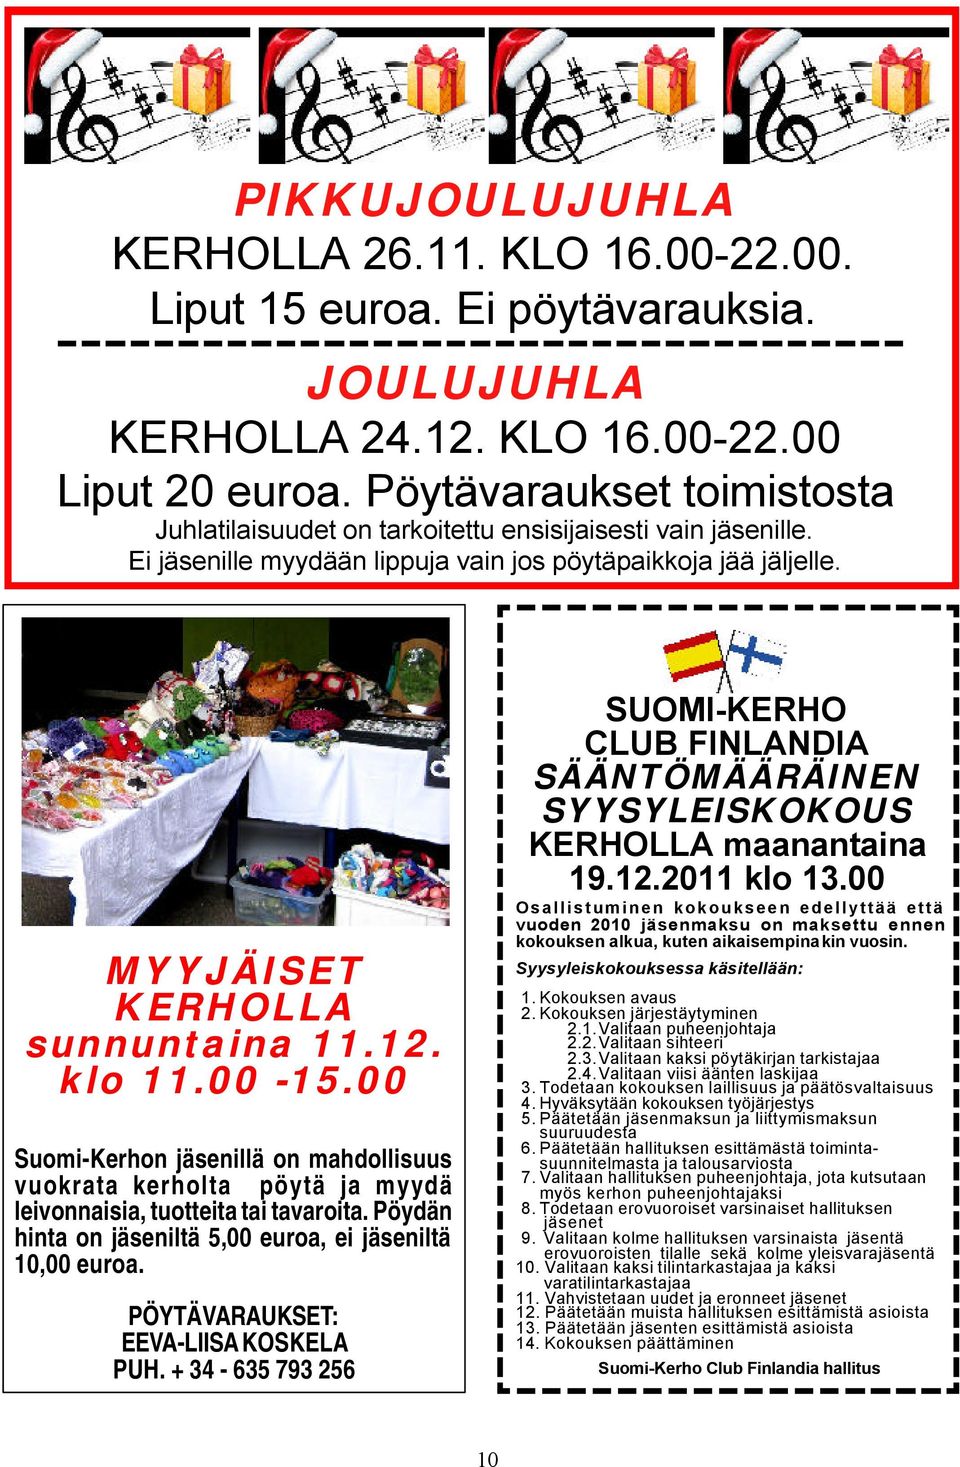 klo 11.00-15.00 Suomi-Kerhon jäsenillä on mahdollisuus vuokrata kerholta pöytä ja myydä leivonnaisia, tuotteita tai tavaroita. Pöydän hinta on jäseniltä 5,00 euroa, ei jäseniltä 10,00 euroa.